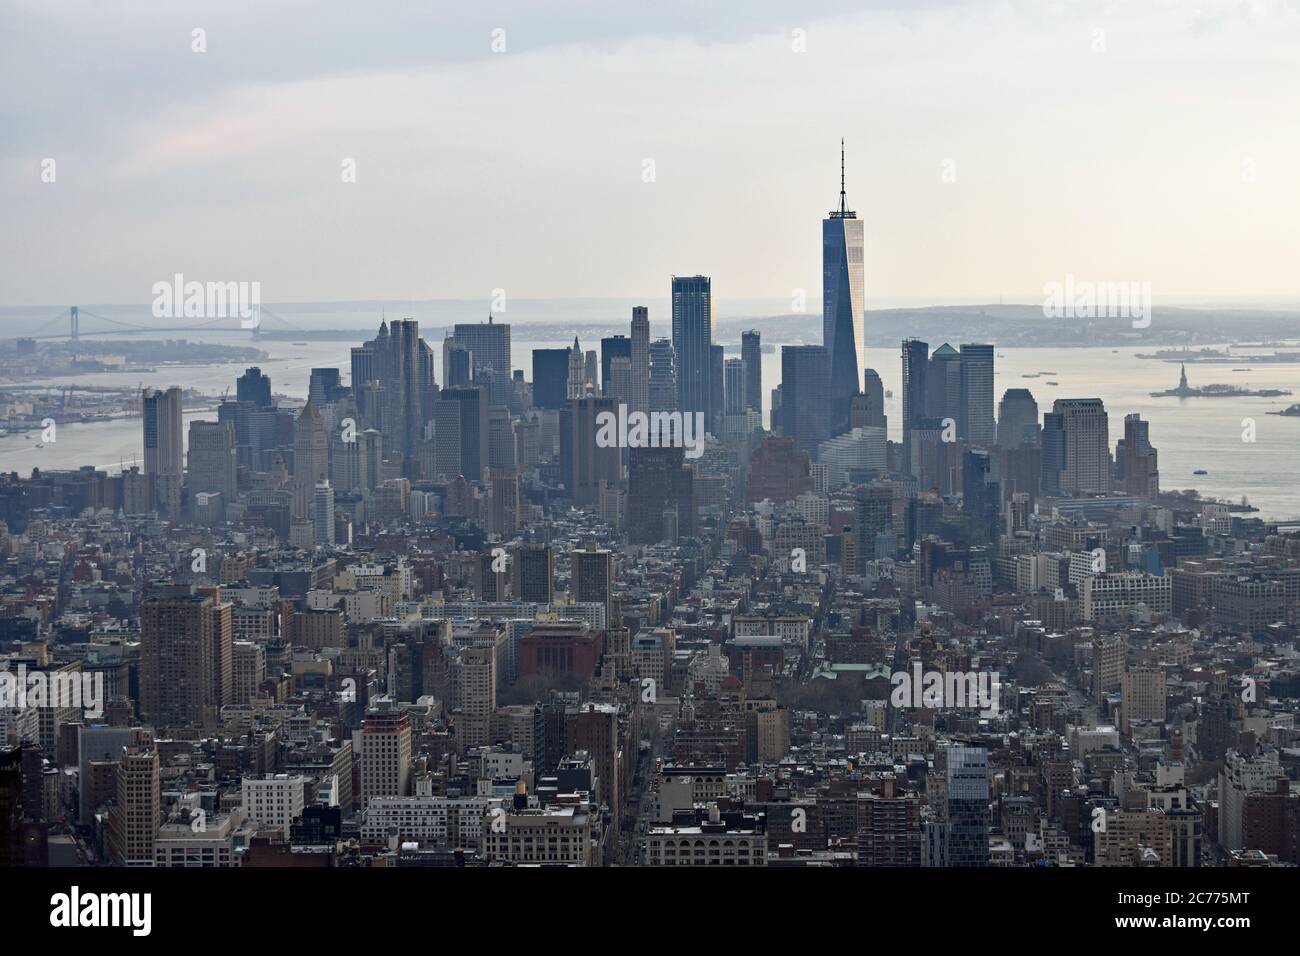 Lo skyline del centro di New York City è stato ripreso dall'Empire state Building. Il One World Trade Center, la Statua della libertà e il ponte Verrazano sono visibili. Foto Stock